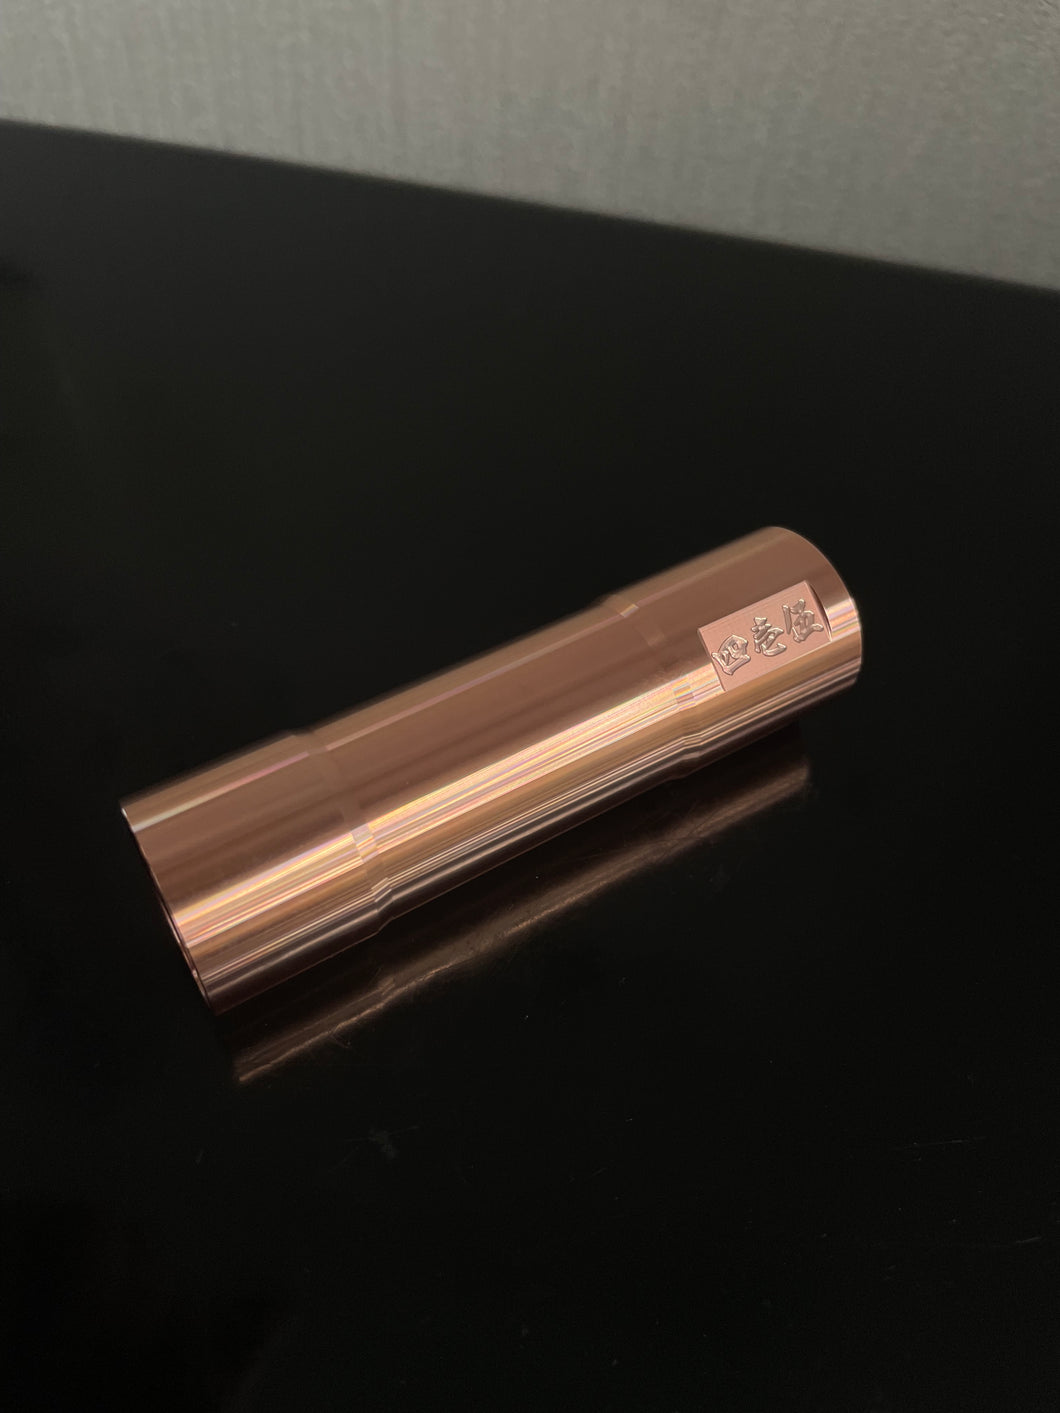 copper tube for katana mech MOD